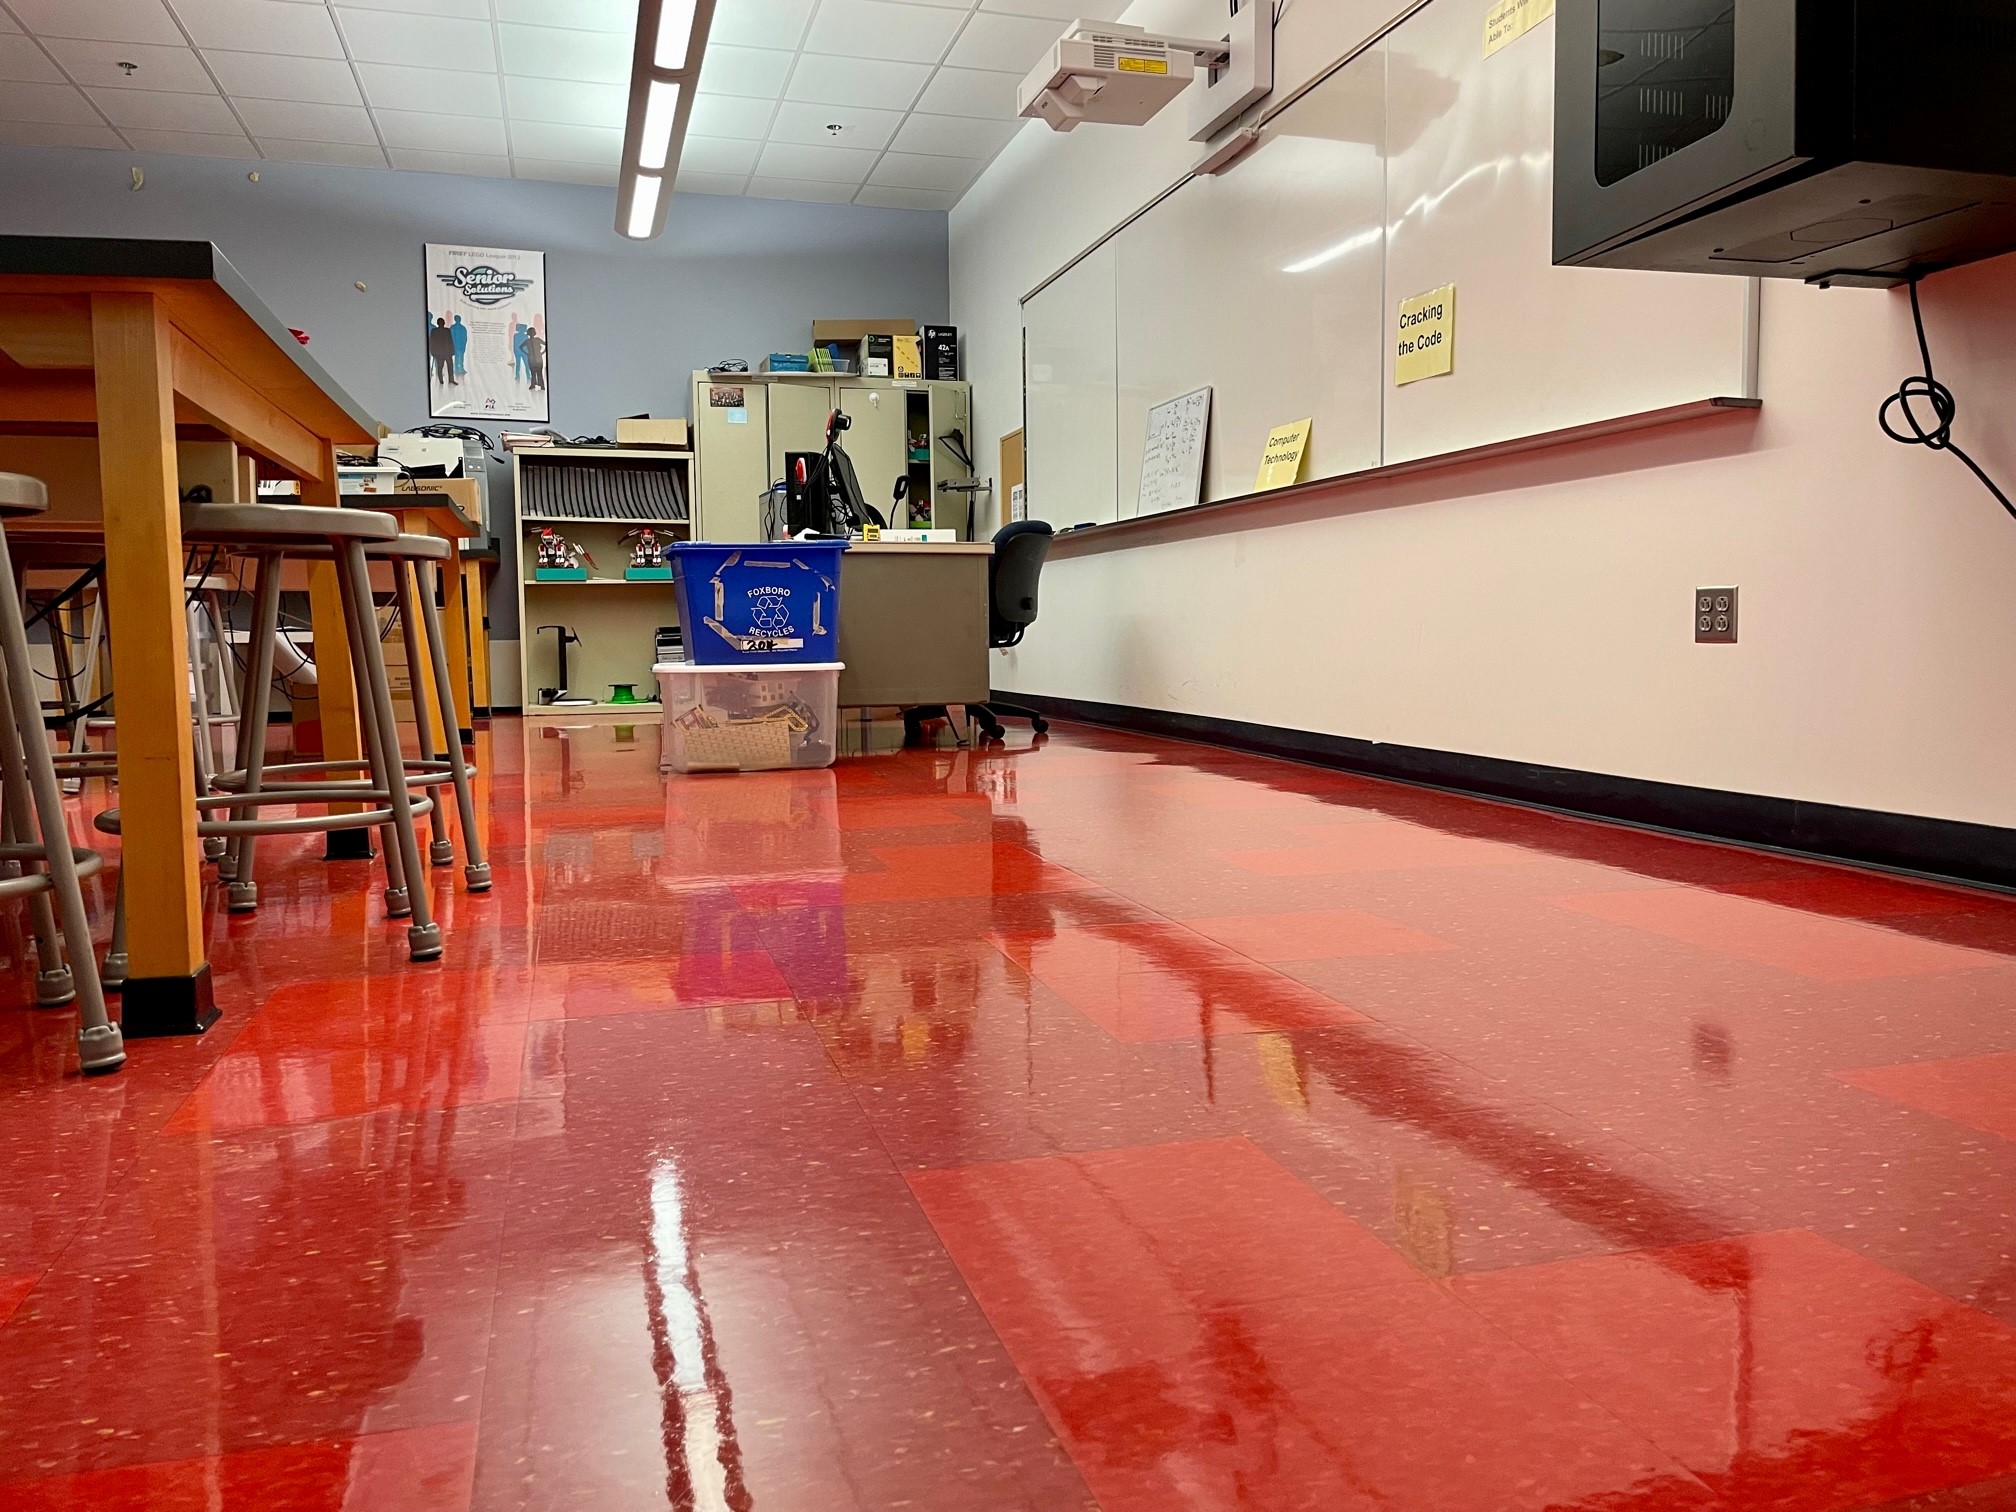 Shiny classroom floors